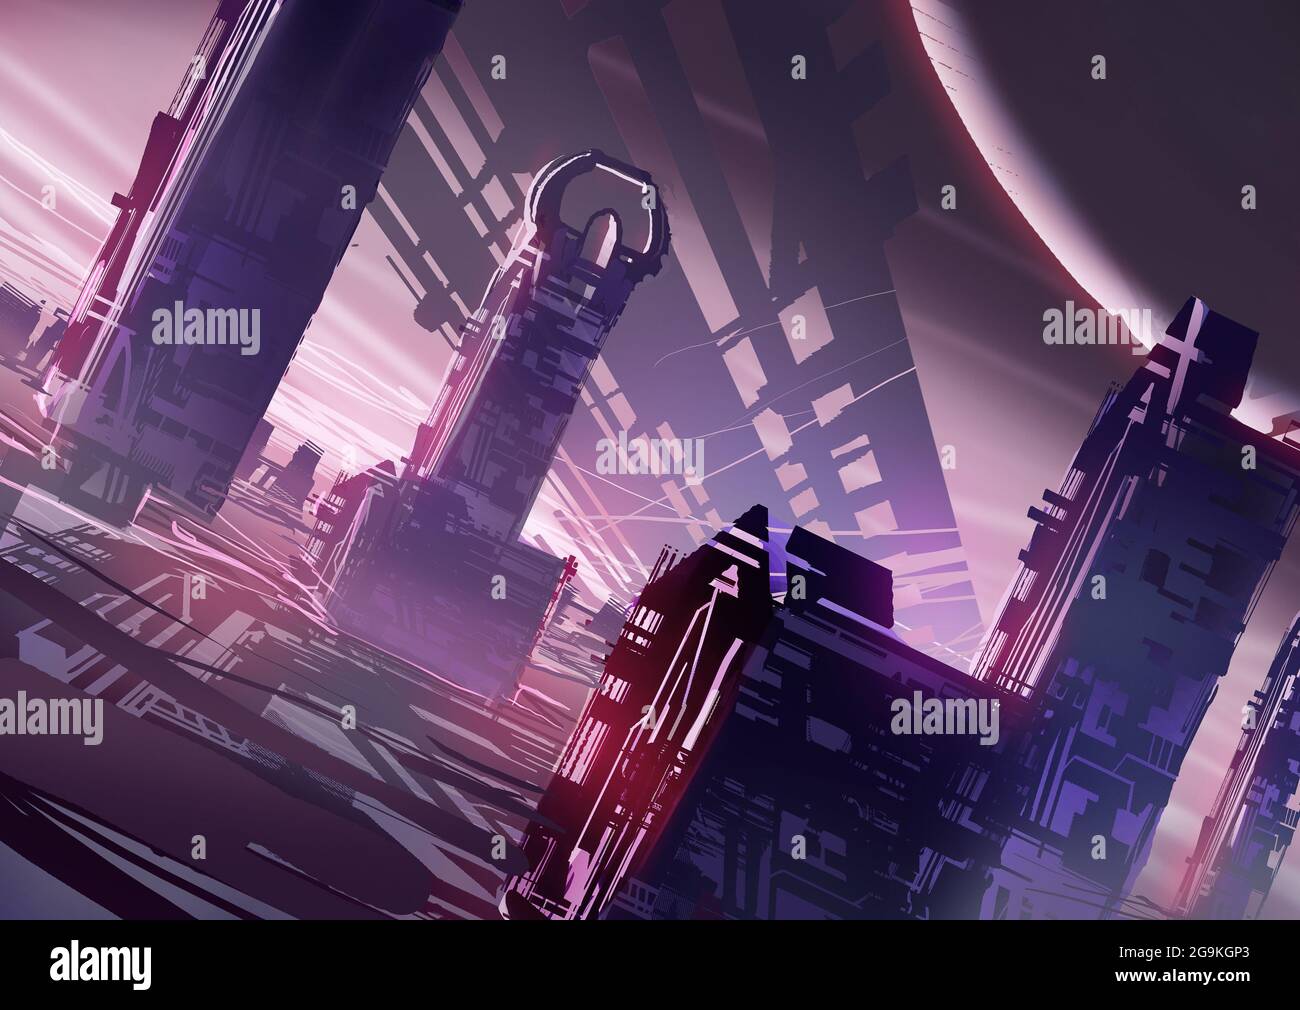 illustration numérique du paysage de la science-fiction fantasy Banque D'Images